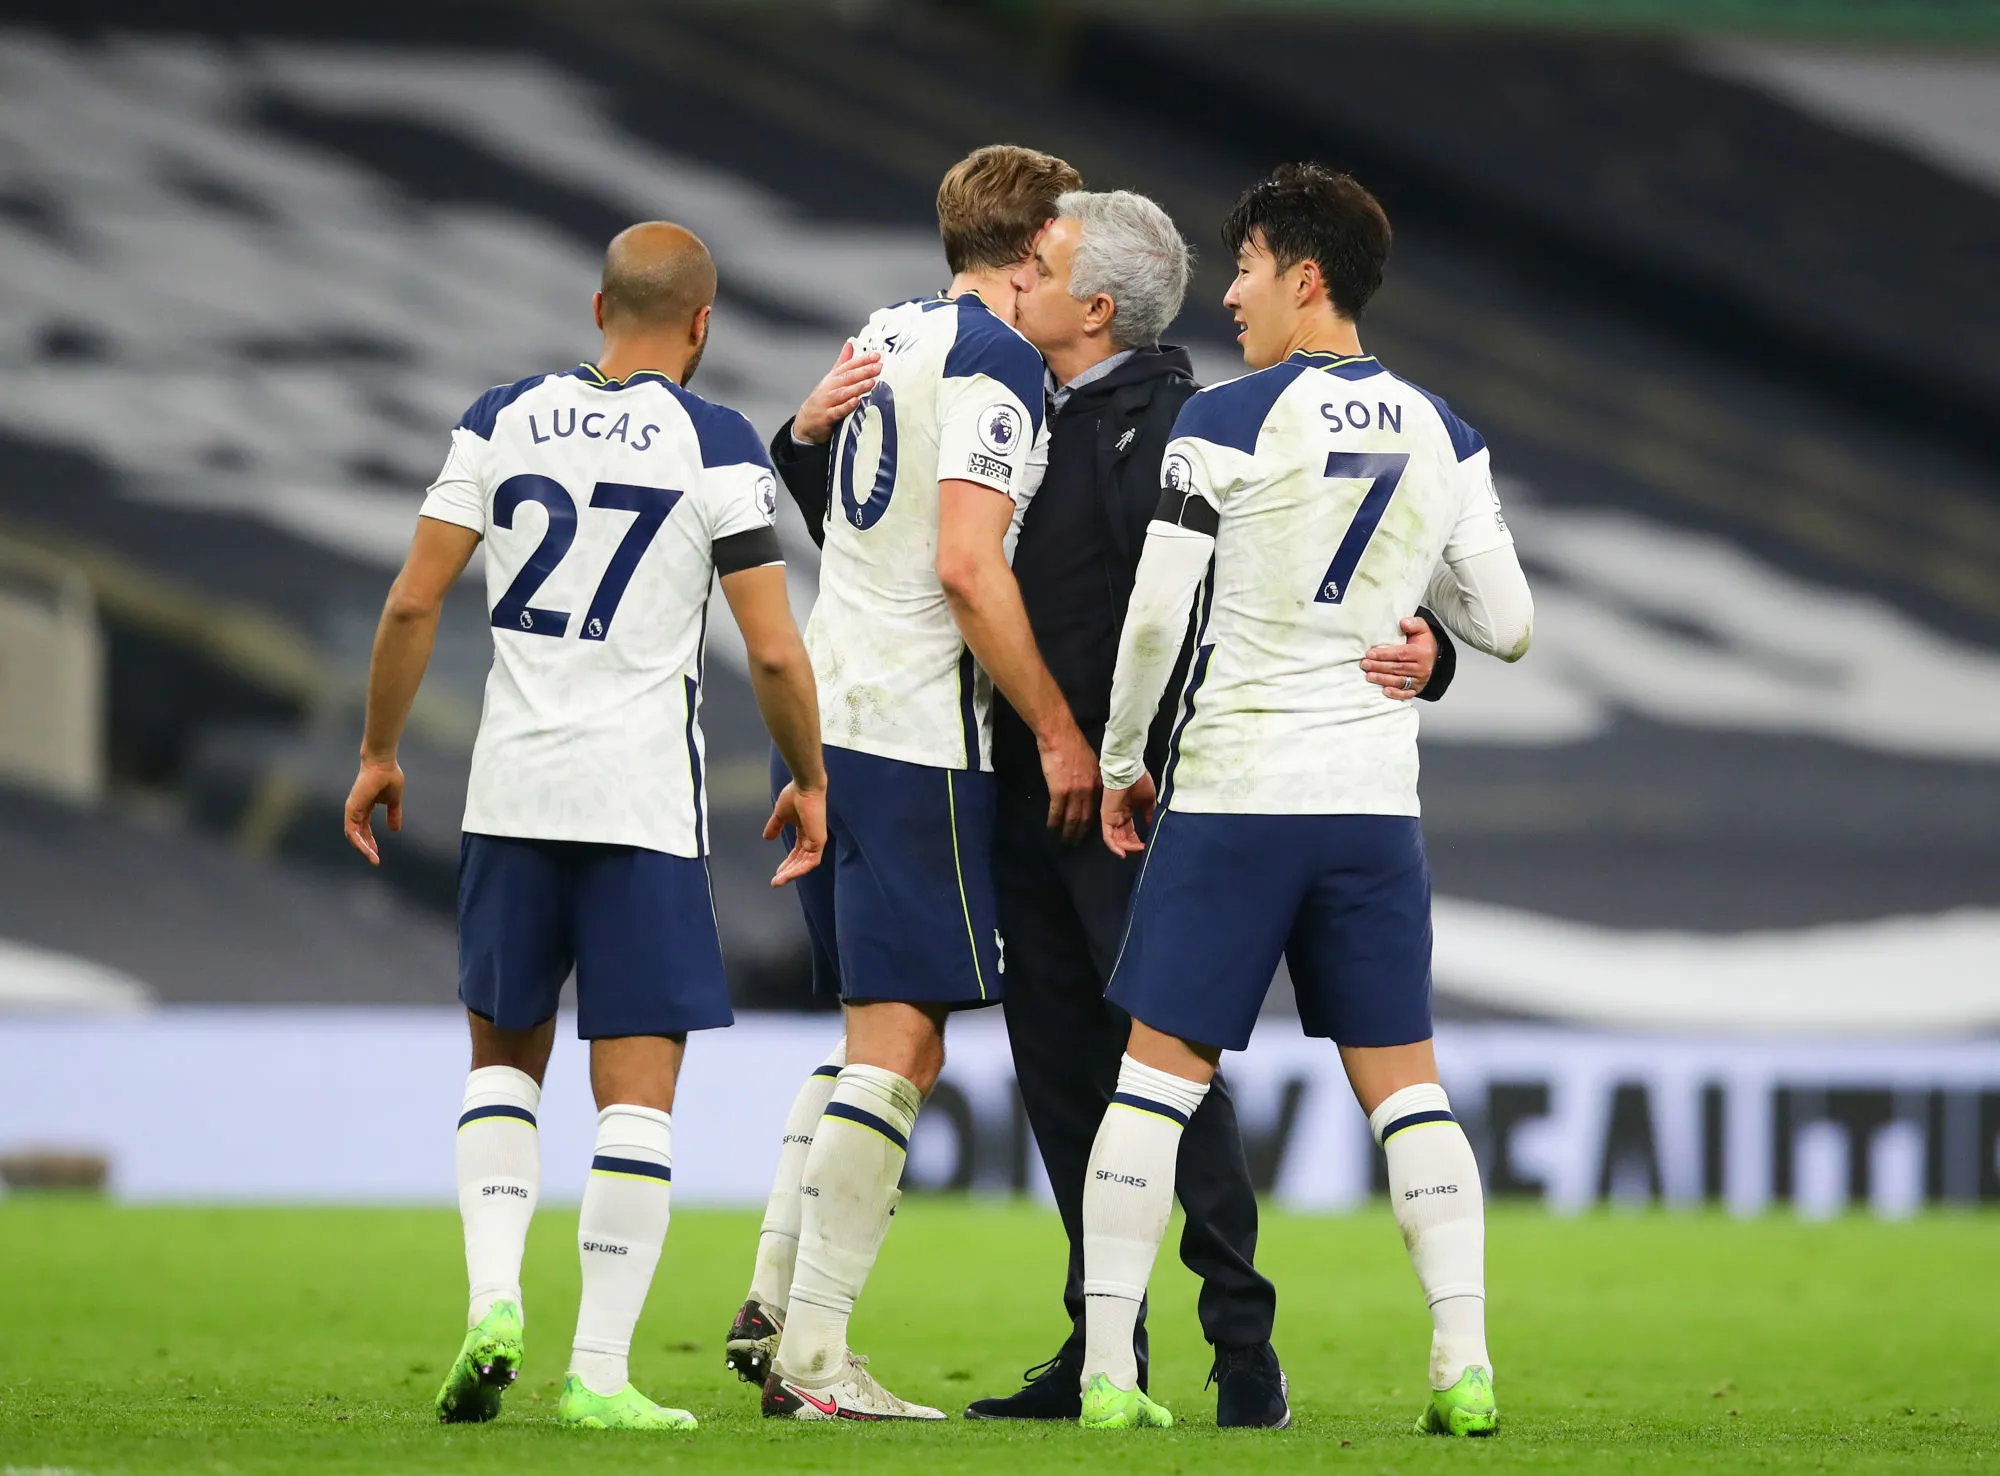 Pronostic Wolfsberger Tottenham : Analyse, cotes et prono du match de Ligue Europa